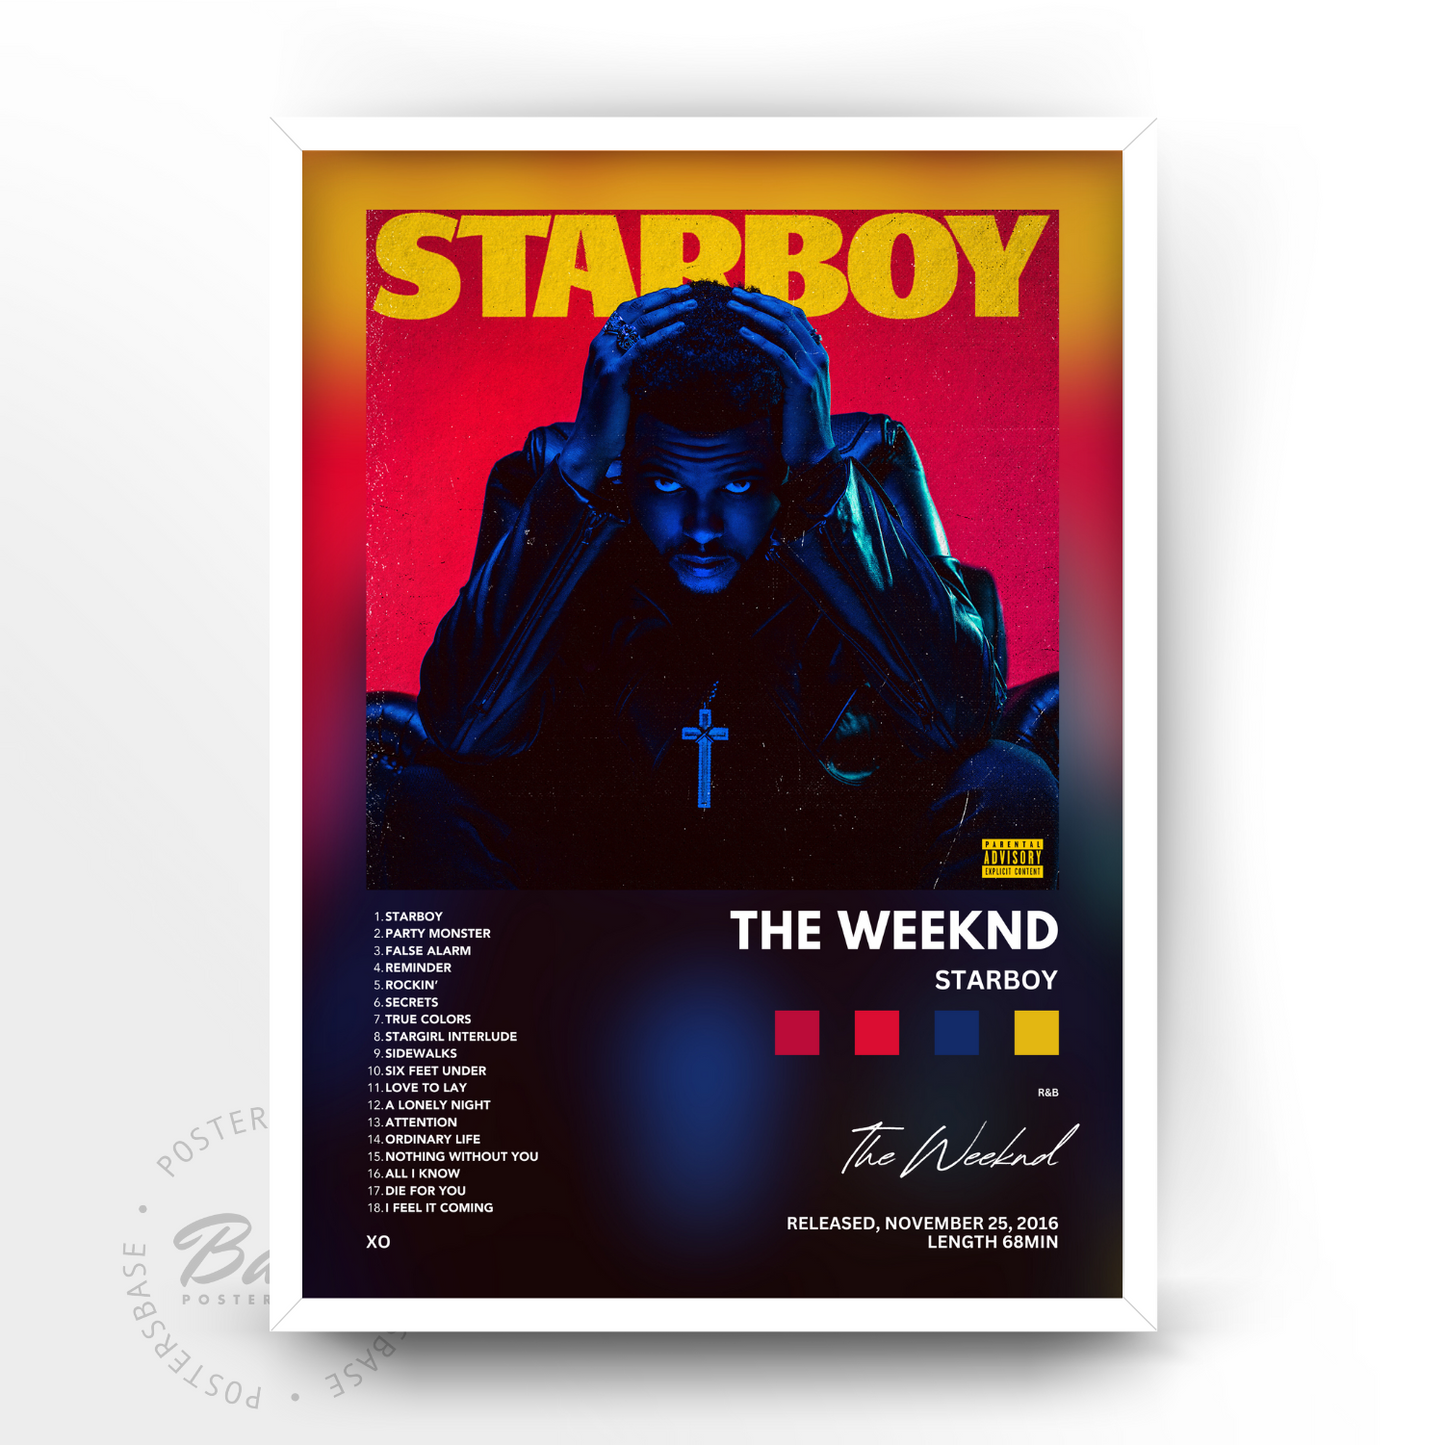 The Weeknd 'Starboy' Album